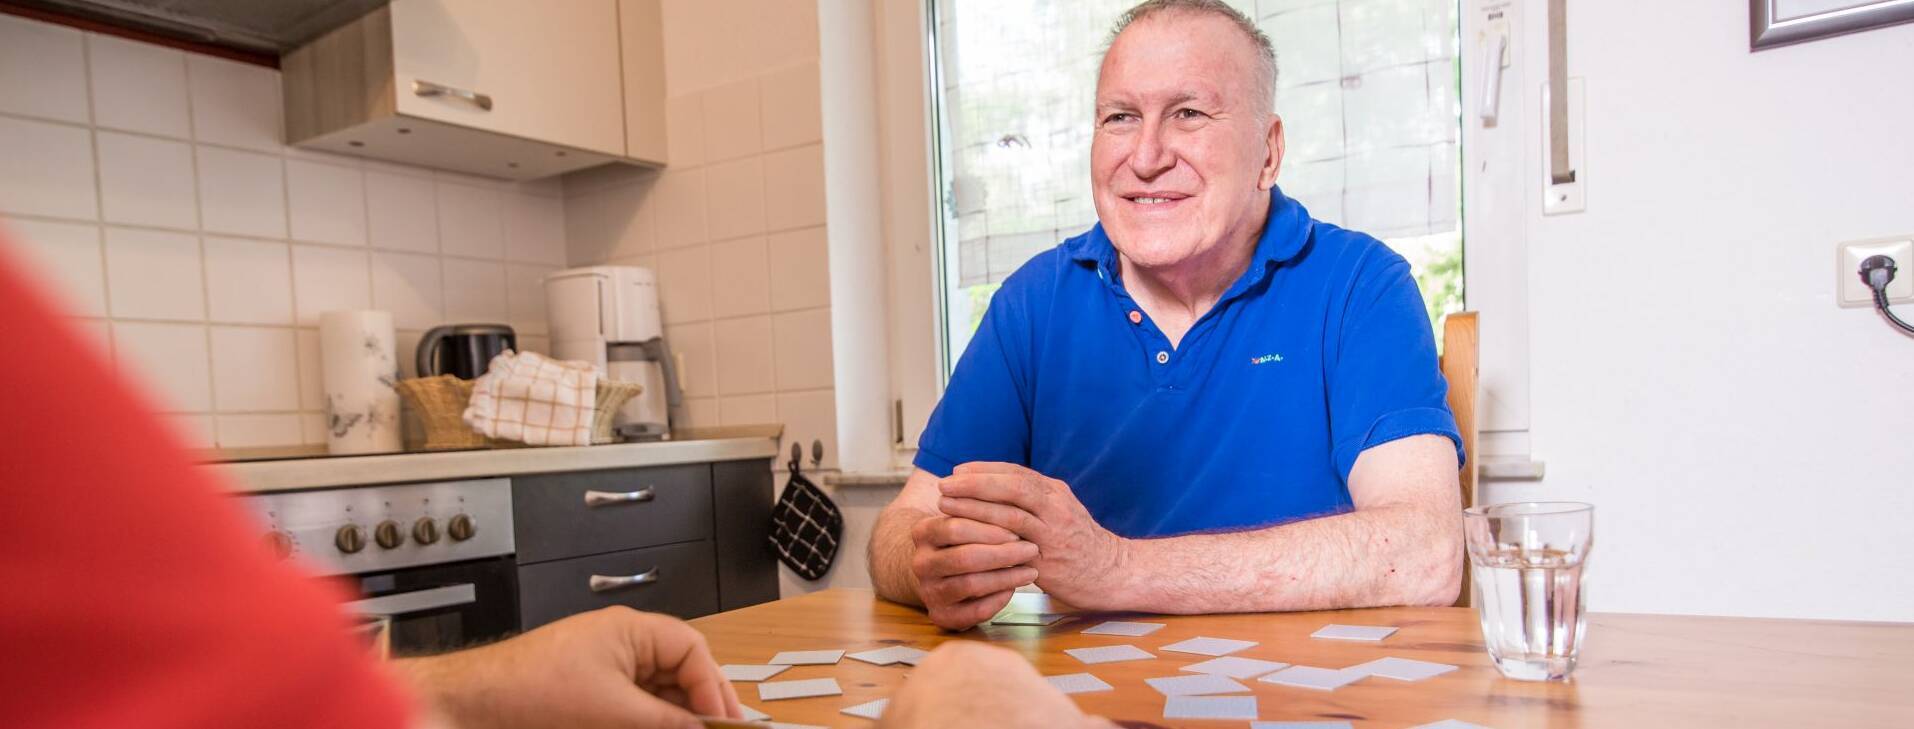 Alter Mann wird beim Kartenspielen gezeigt, und lächelt fröhlich.